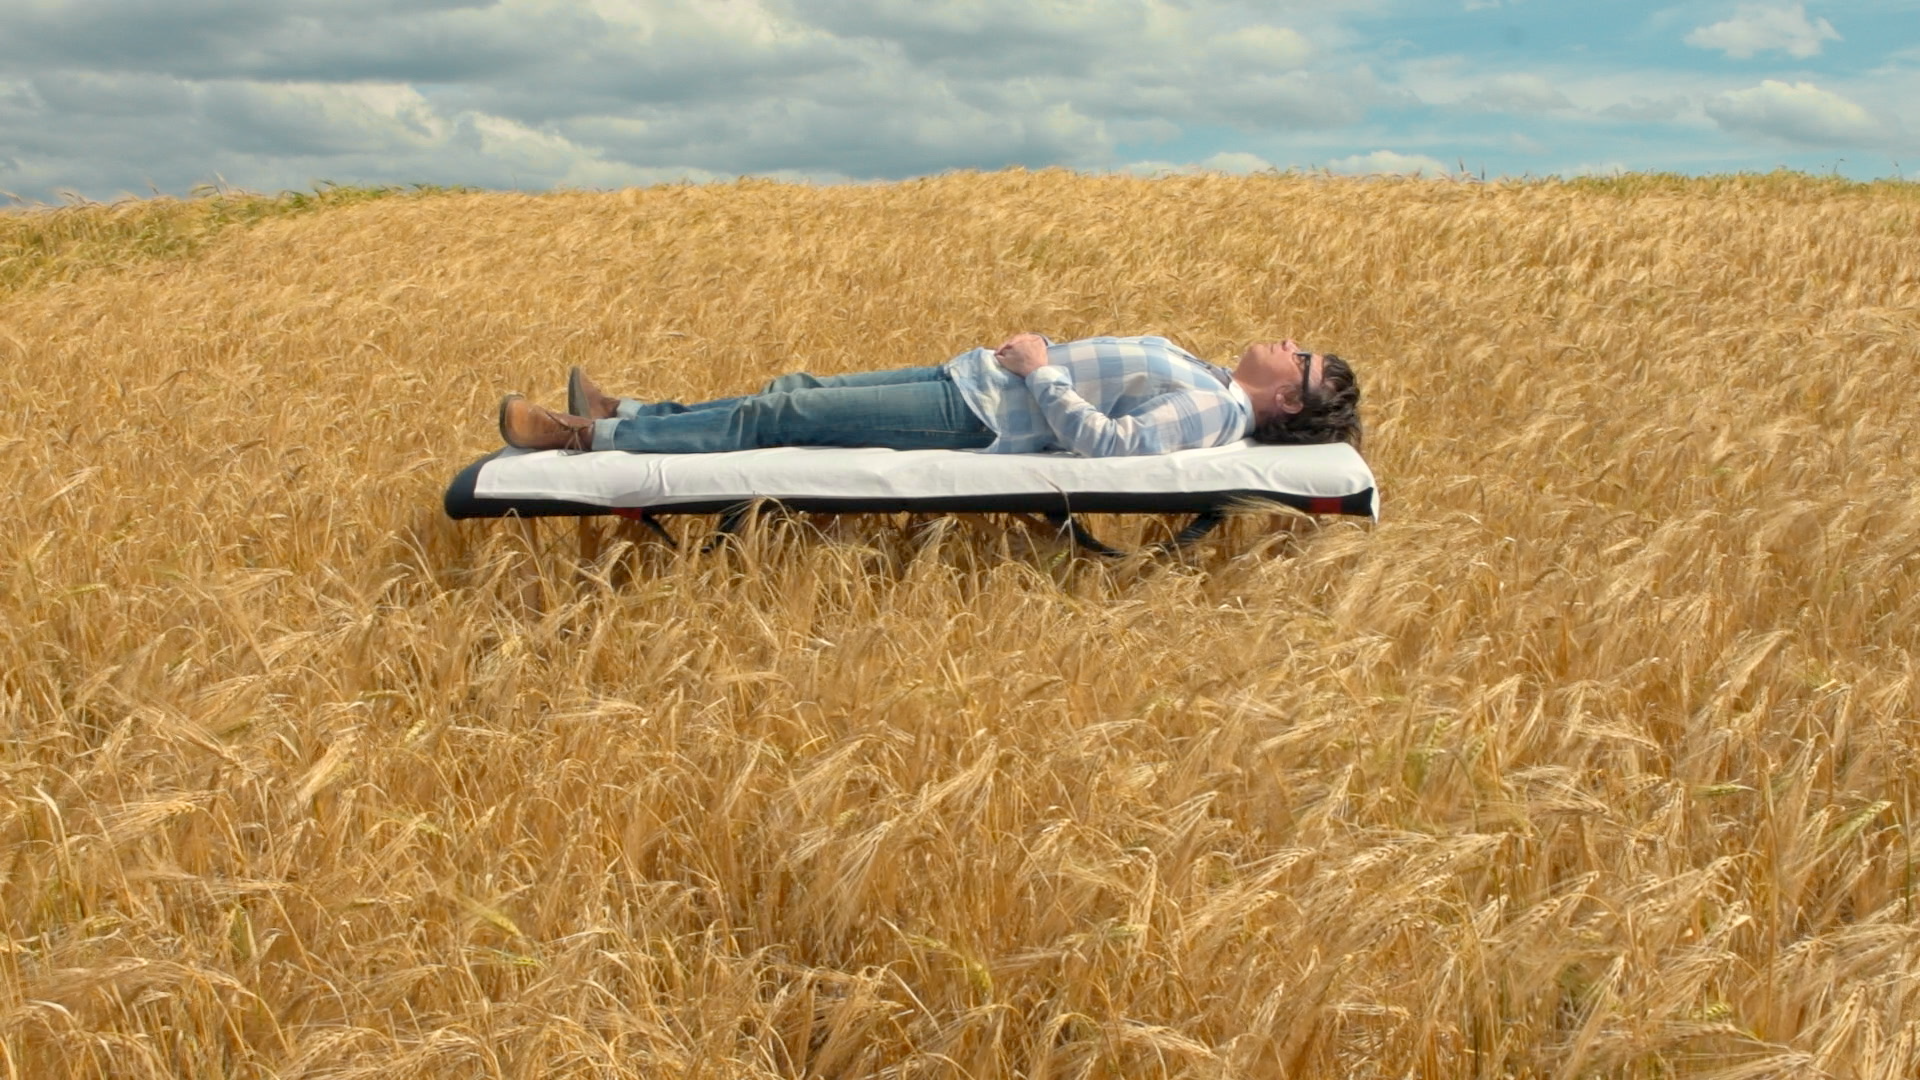 Image extraite du film « Chroniques hospitalières », une personne allongée sur un lit d’hôpital dans un champ de blé.